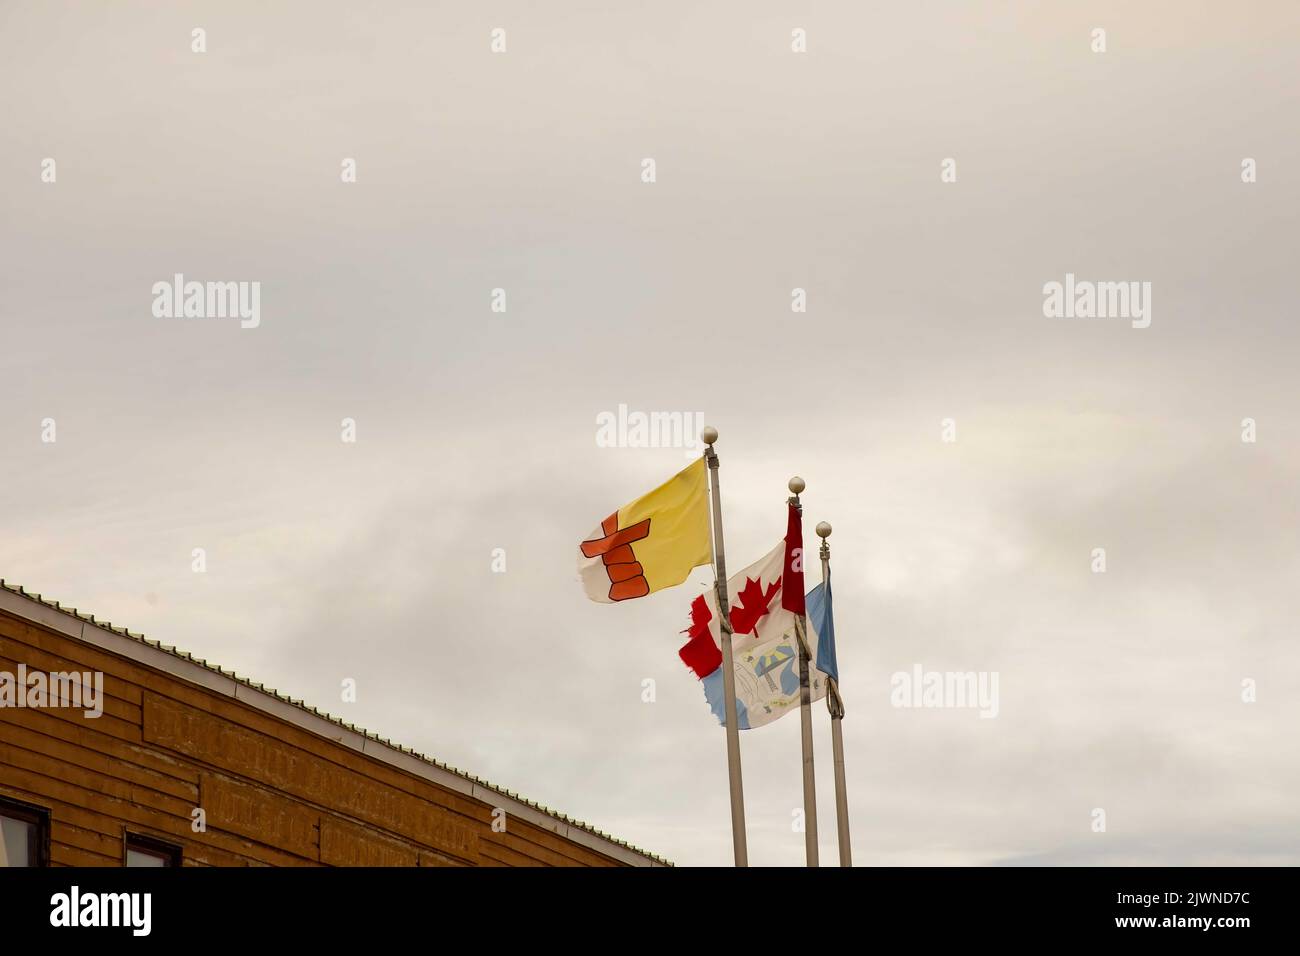 Bandiera del nuovo territorio Nunavut accanto alla bandiera canadese e alla bandiera del comune di Cambridge Bay a Cambridge Bay, Victoria Island, Nunavut, Canada. Foto Stock